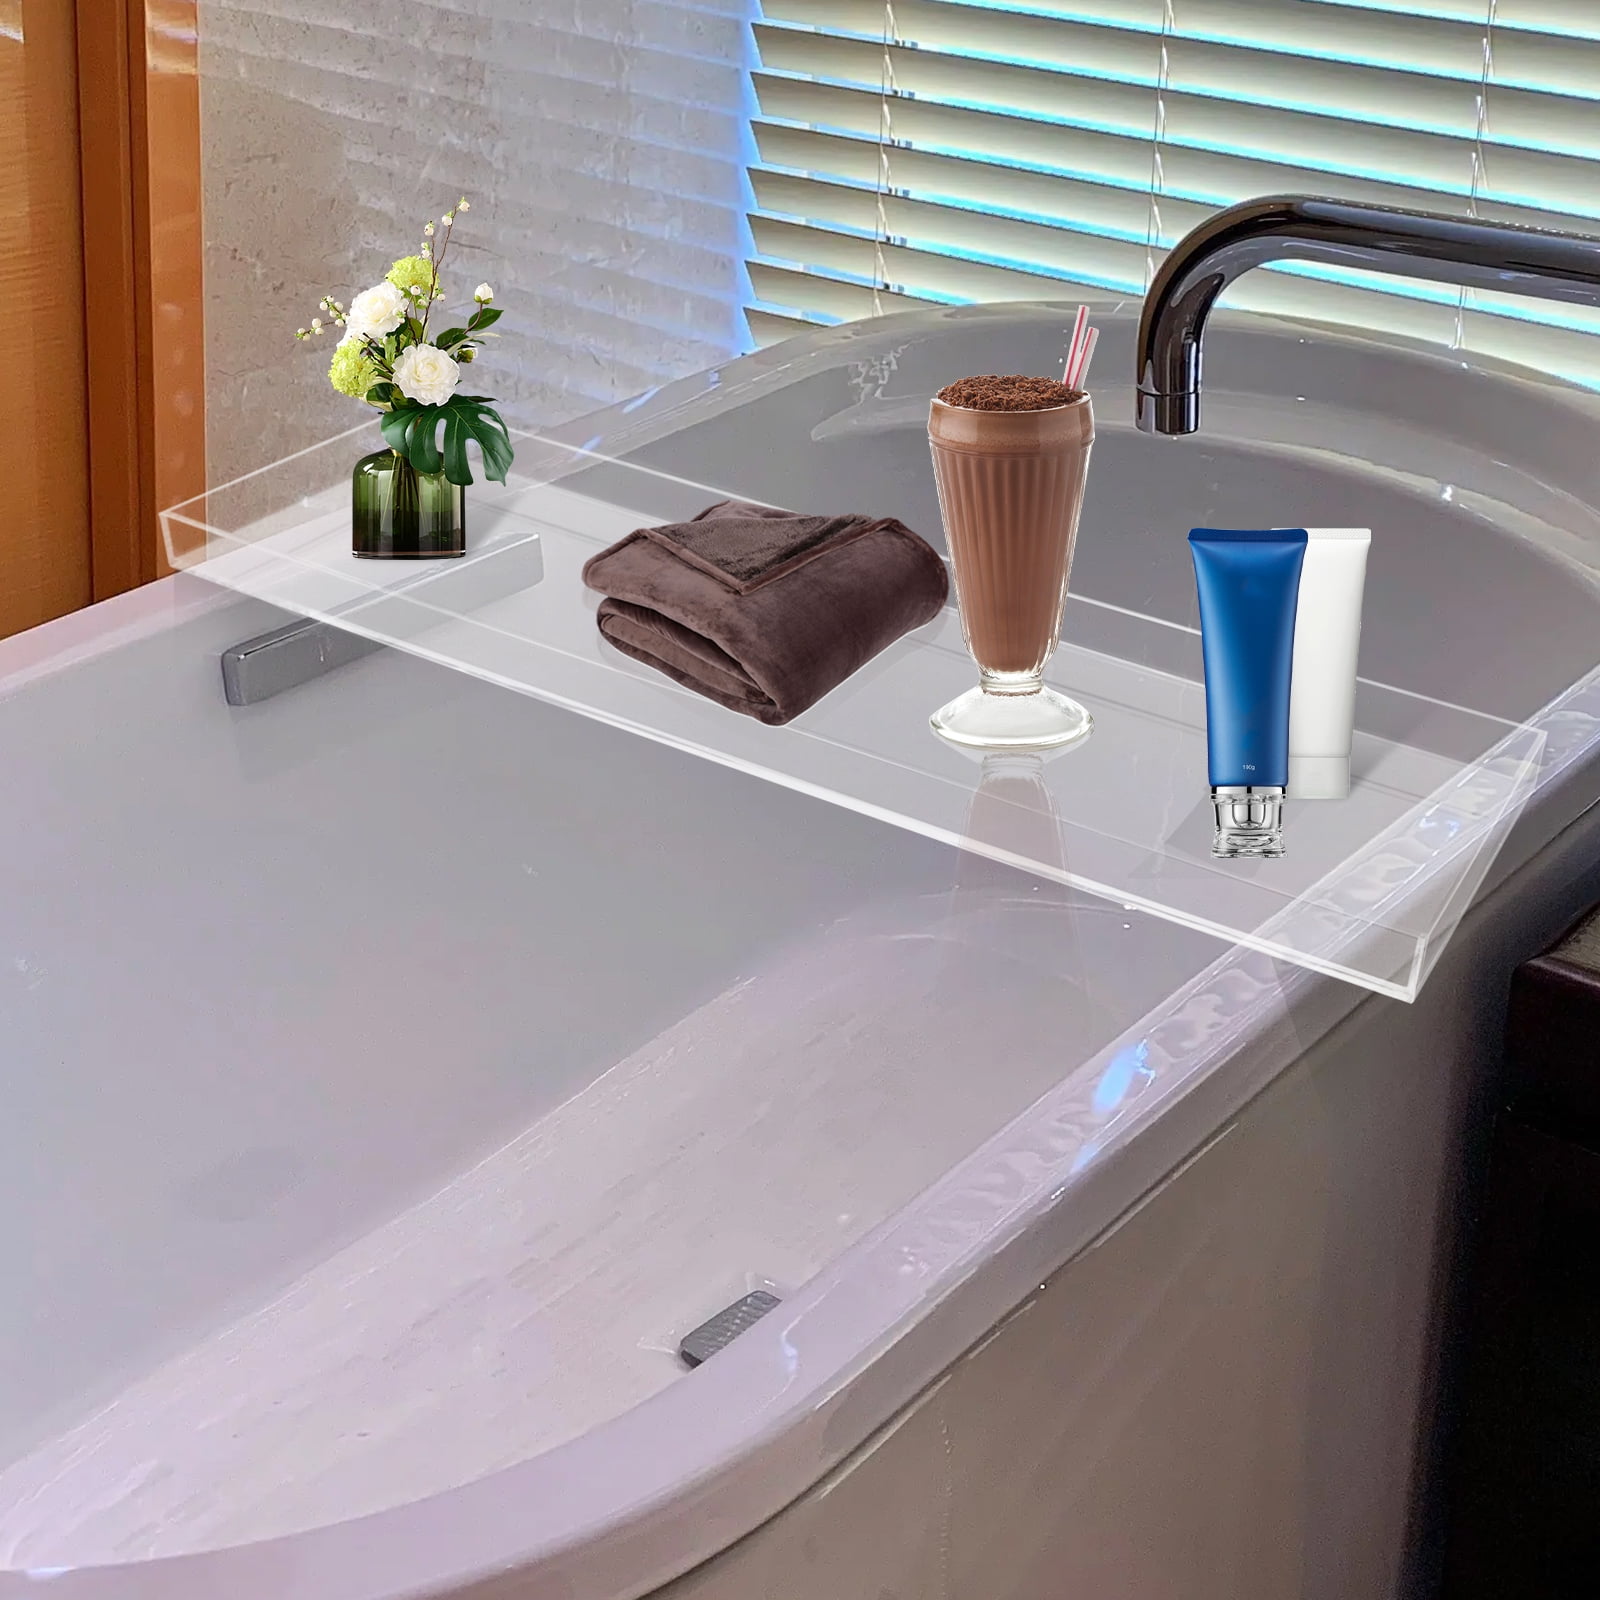 Acrylic Bathtub Tray Iridescent Clear Bathroom Caddy Shelf with